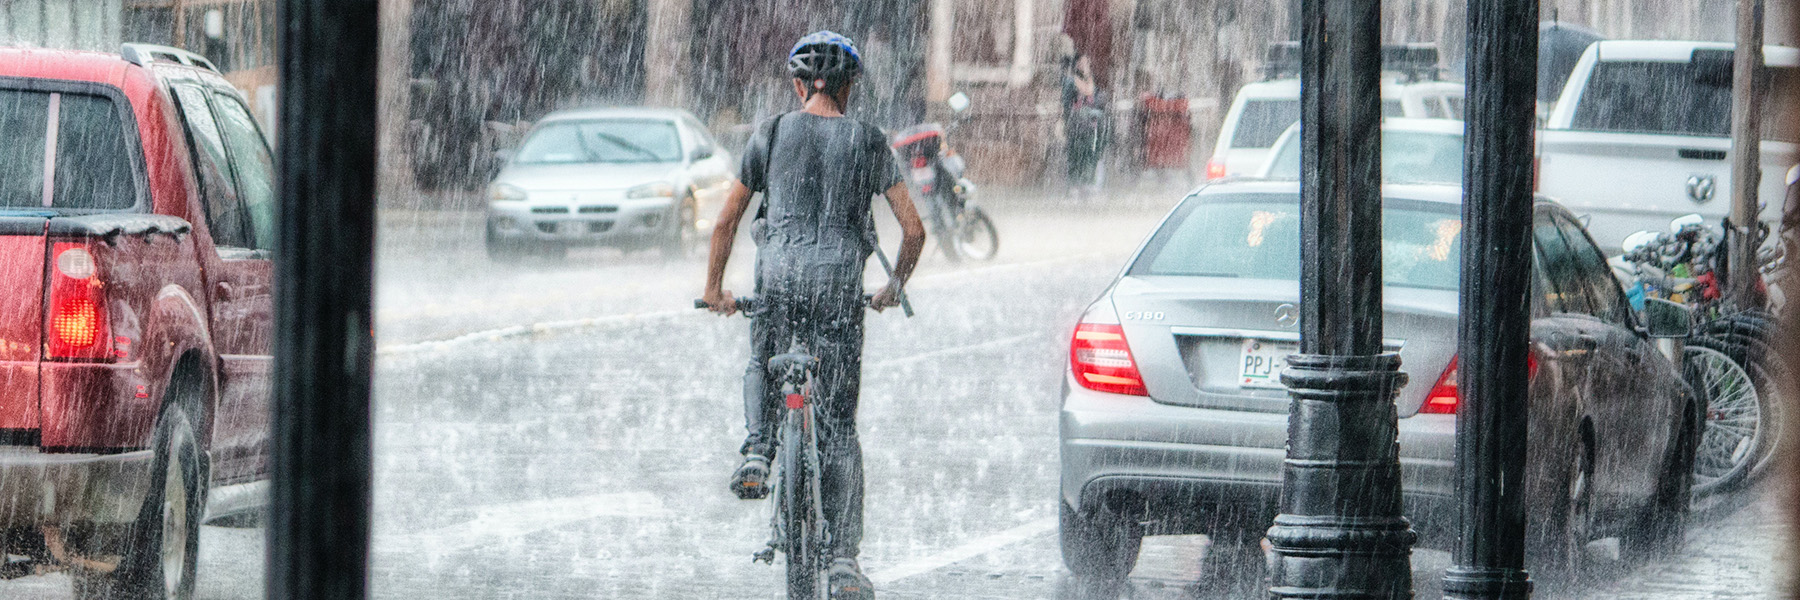 boy rides a bike in a heavy rainstorm